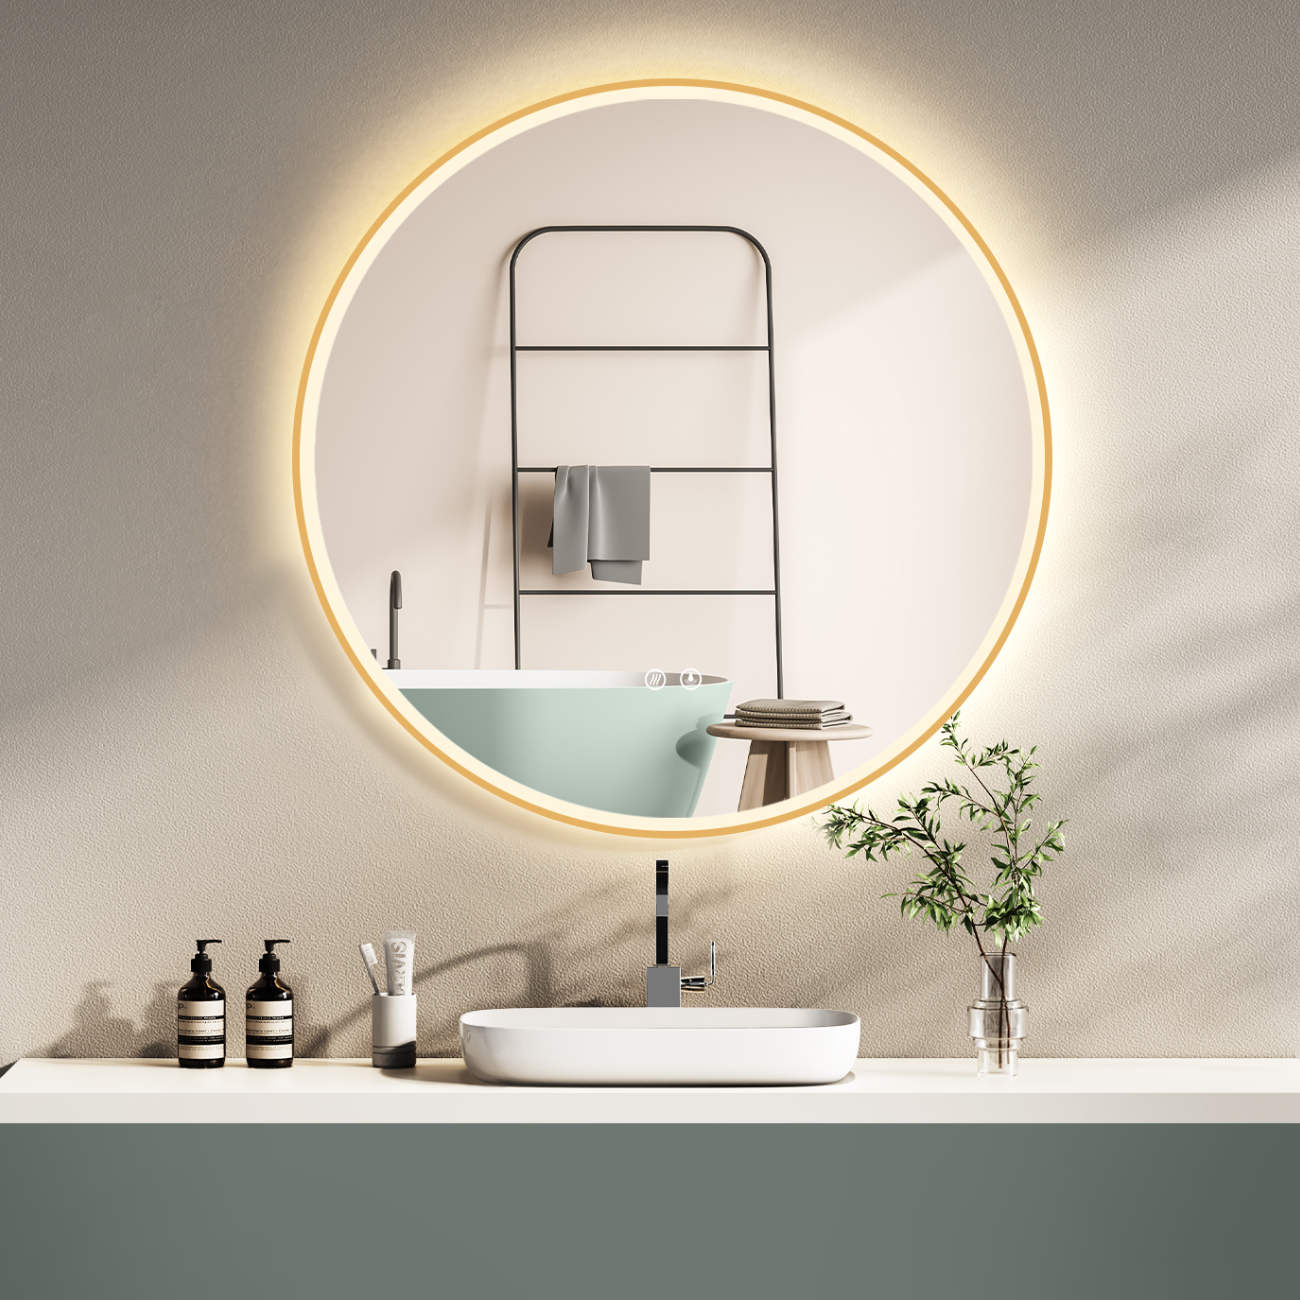 LED Badspiegel: Lichtwechsel, runder Design-Spiegel, Antibeschlag-Funktion, Gold-Metallrahmen